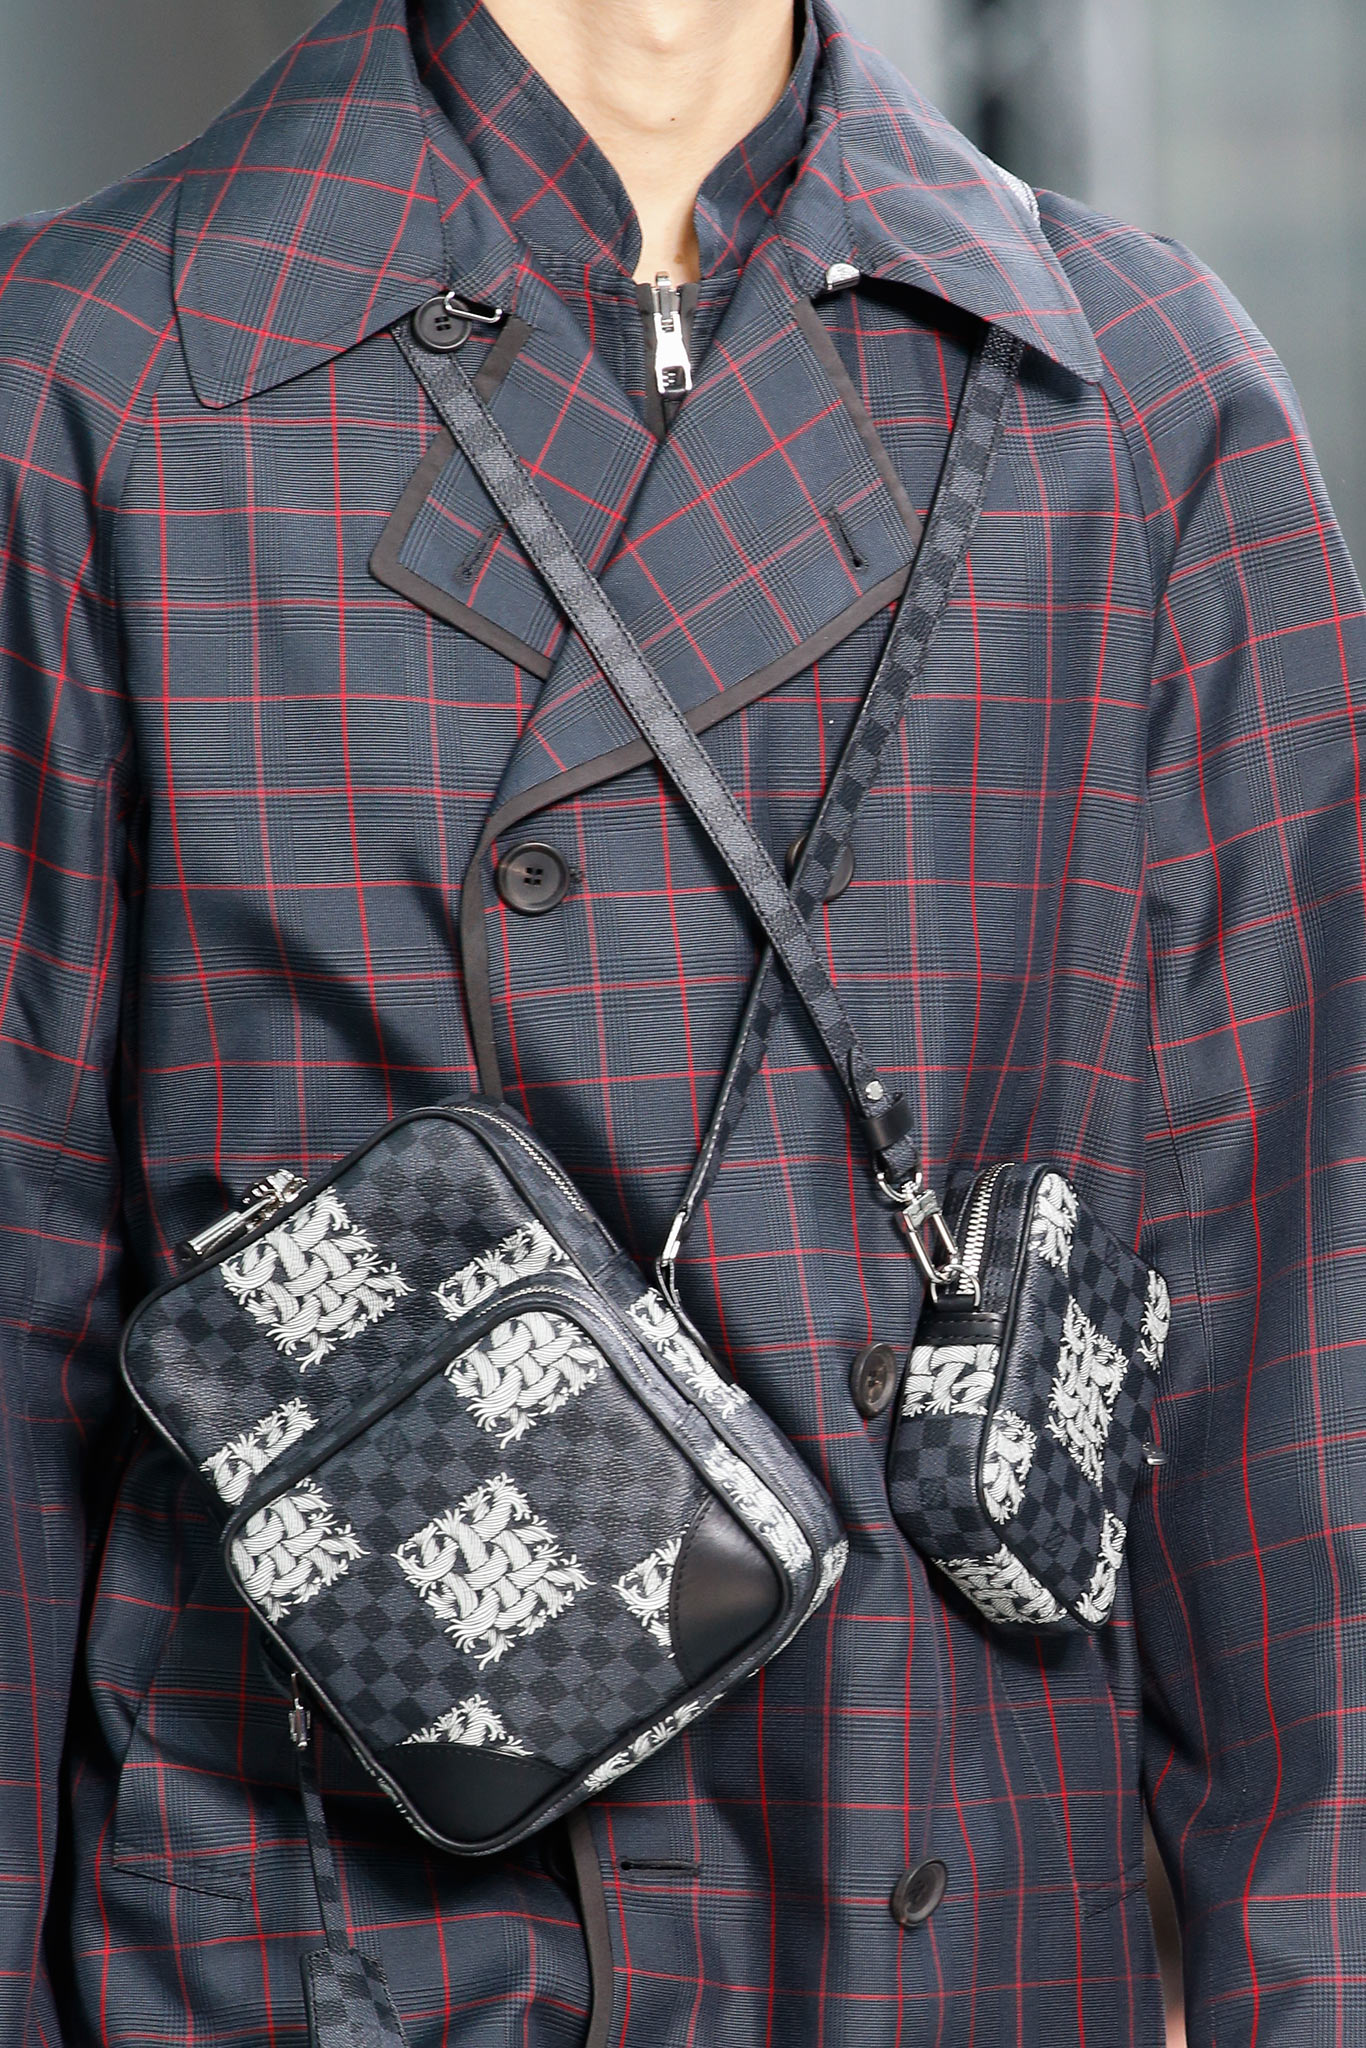 Shop Louis Vuitton DAMIER GRAPHITE Men's Clothing